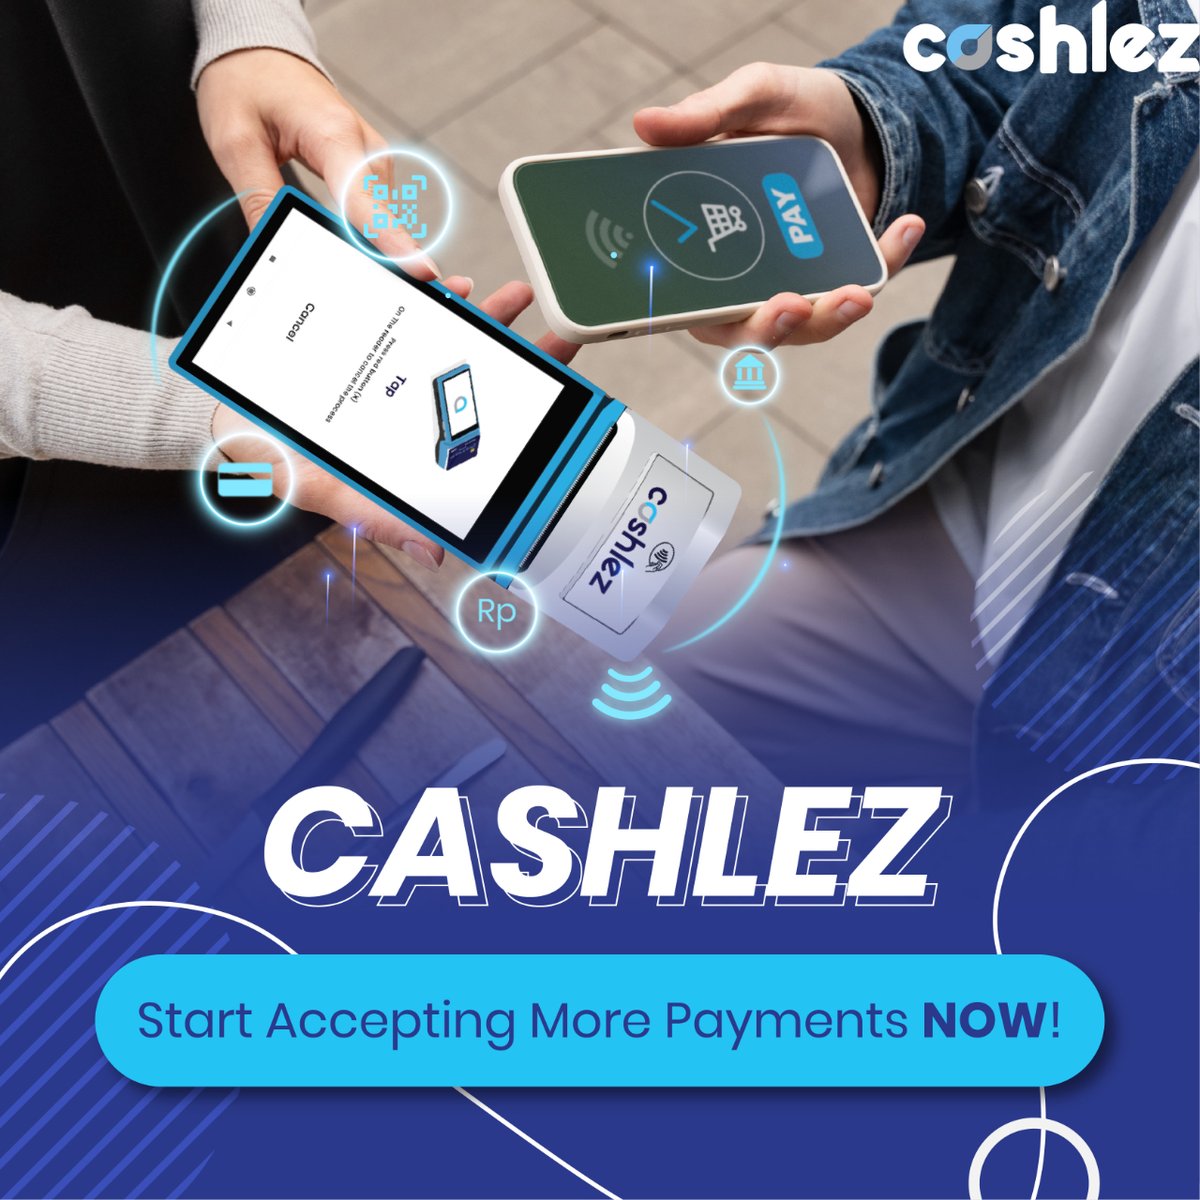 Ayo join Cashlez sekarang dan mulai perluas metode pembayaran bisnis kamu! 😎🔥

#cashlez #cashlezin #cashlezproduct #paymentgateway #pembayarancashlez #transaksidigital #metodepembayaran #pembayaran #onlinepayment